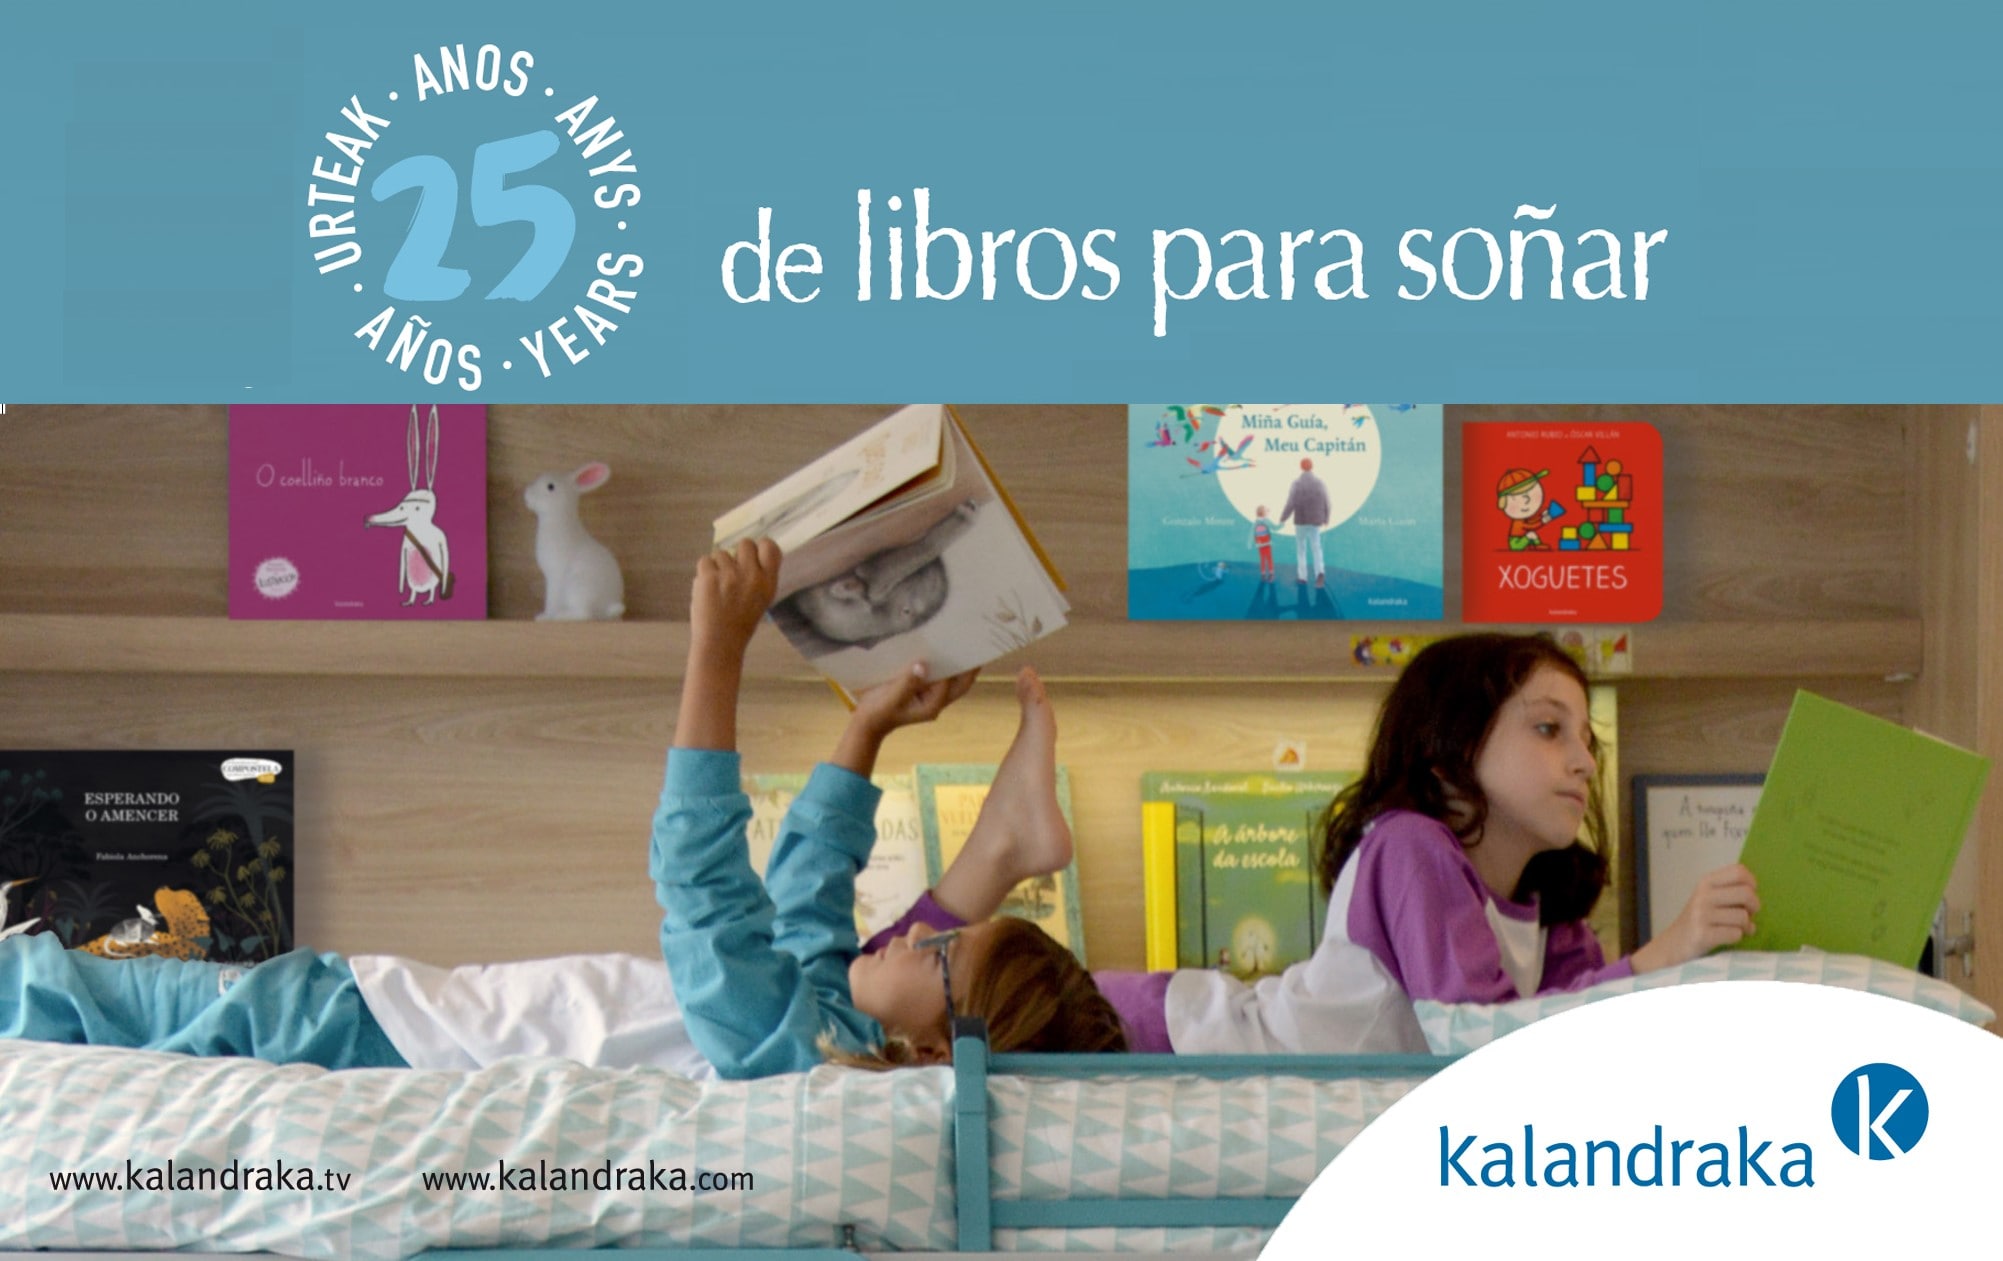 Una bambina legge un albo illustrato sdraiata sul letto, alle sue spalle le copertine di alcuni albi illustrati della casa editrice Kalandraka